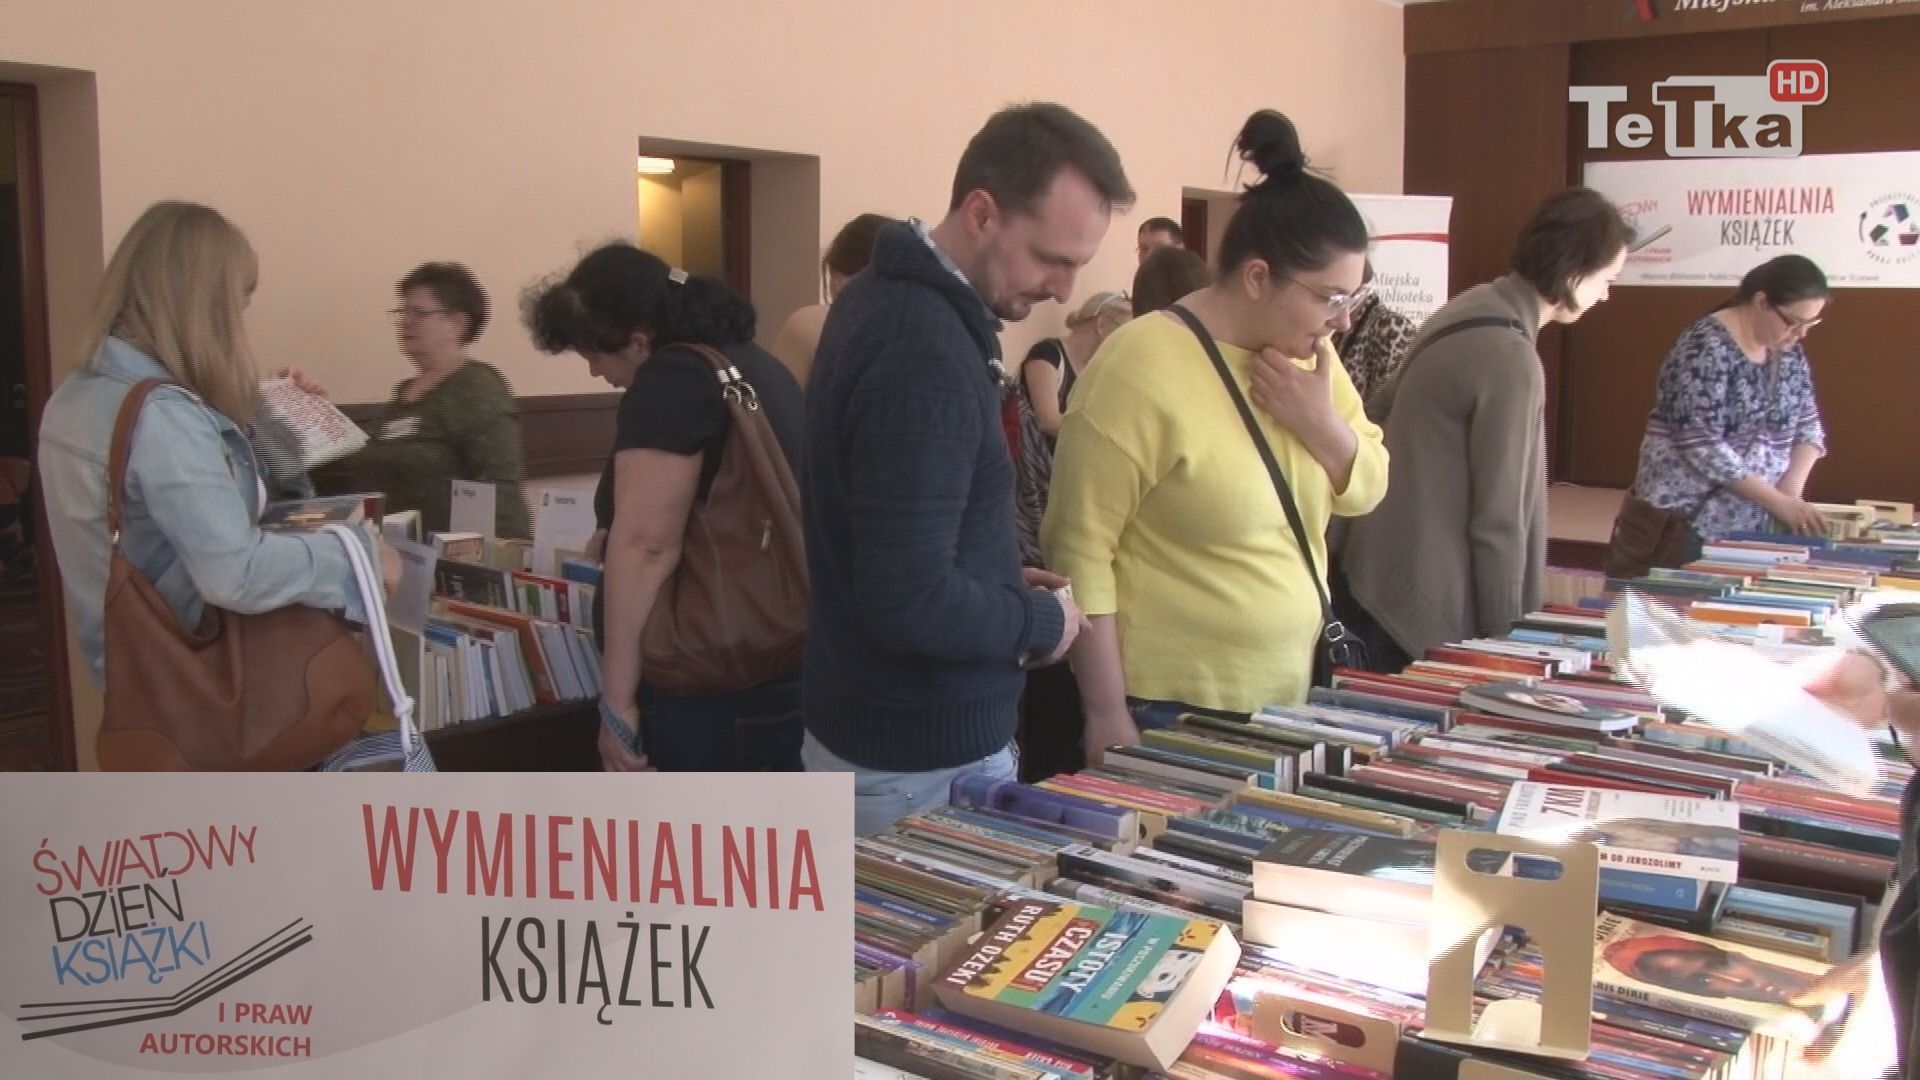 czytelnicy tczewskiej książnicy już po raz szósty mieli możliwość odświeżenia domowych kolekcji podczas Wymienialni książek